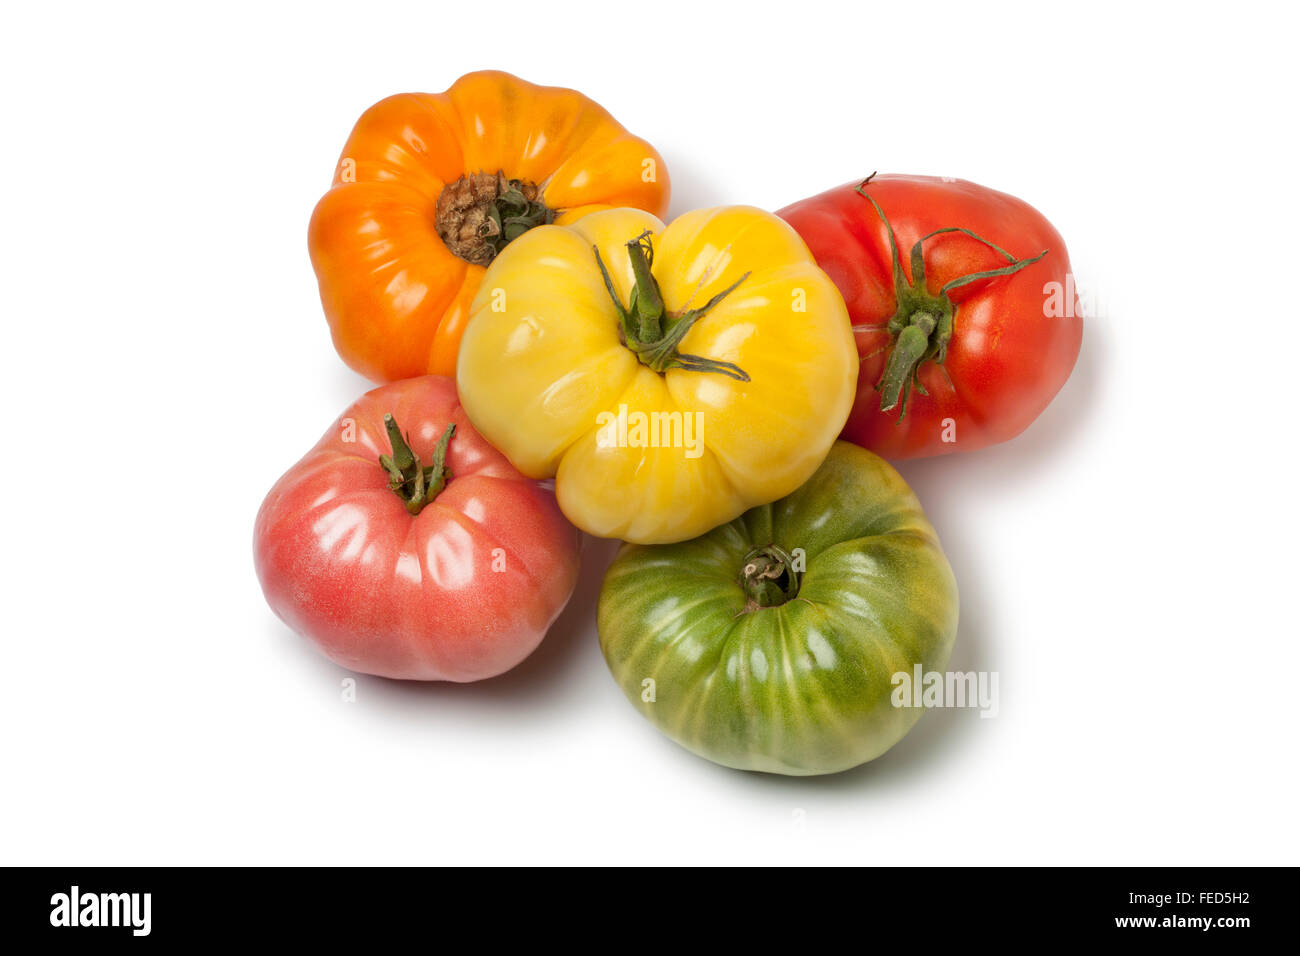 Diversité des tomates Beefsteak entier sur fond blanc Banque D'Images